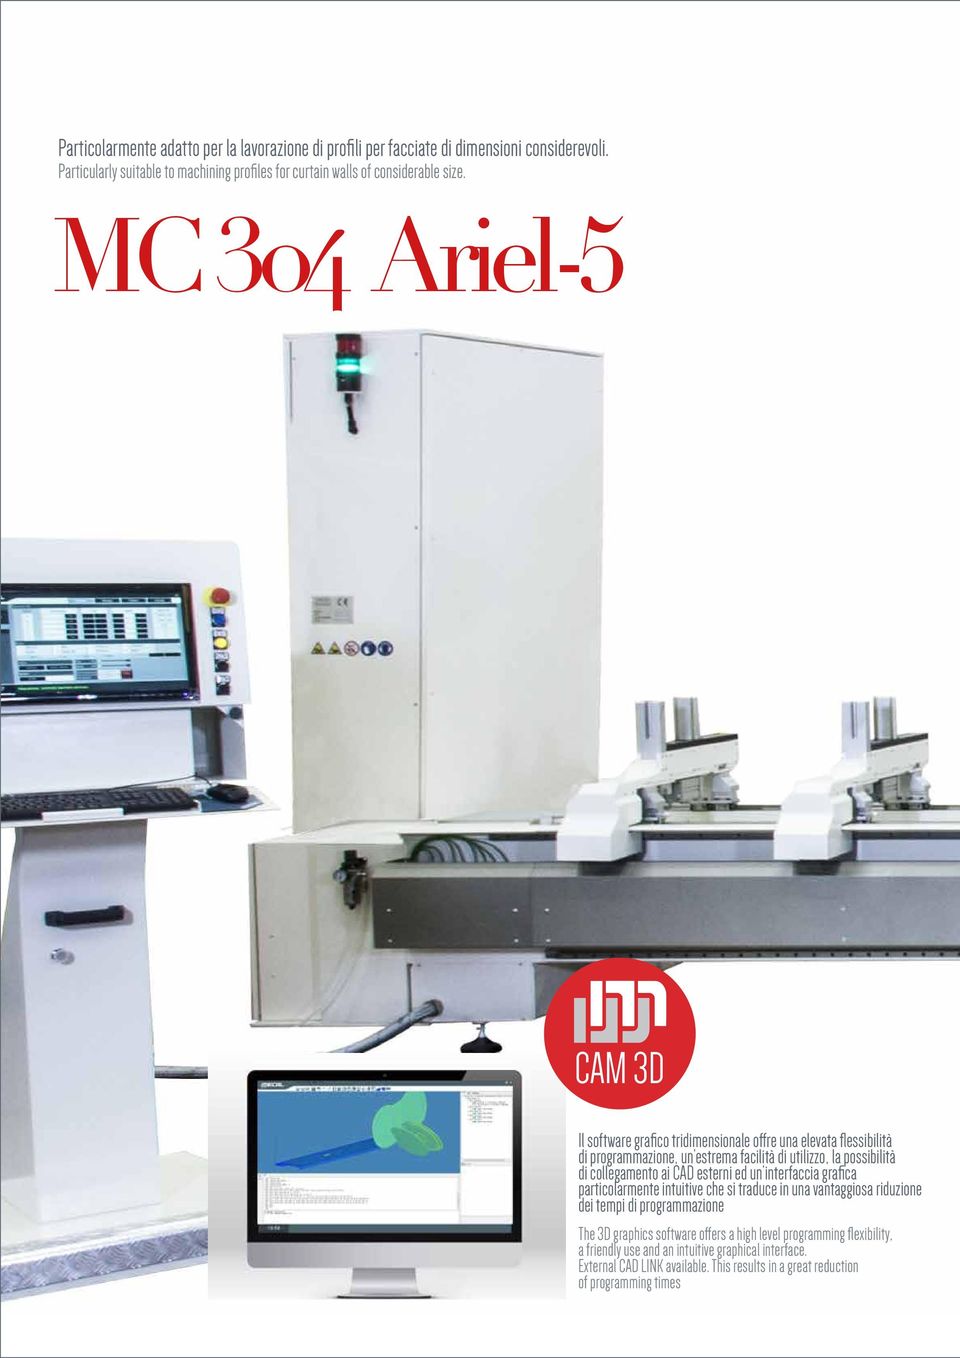 MC 304 Ariel-5 CAM 3D Il software grafico tridimensionale offre una elevata flessibilità di programmazione, un estrema facilità di utilizzo, la possibilità di collegamento